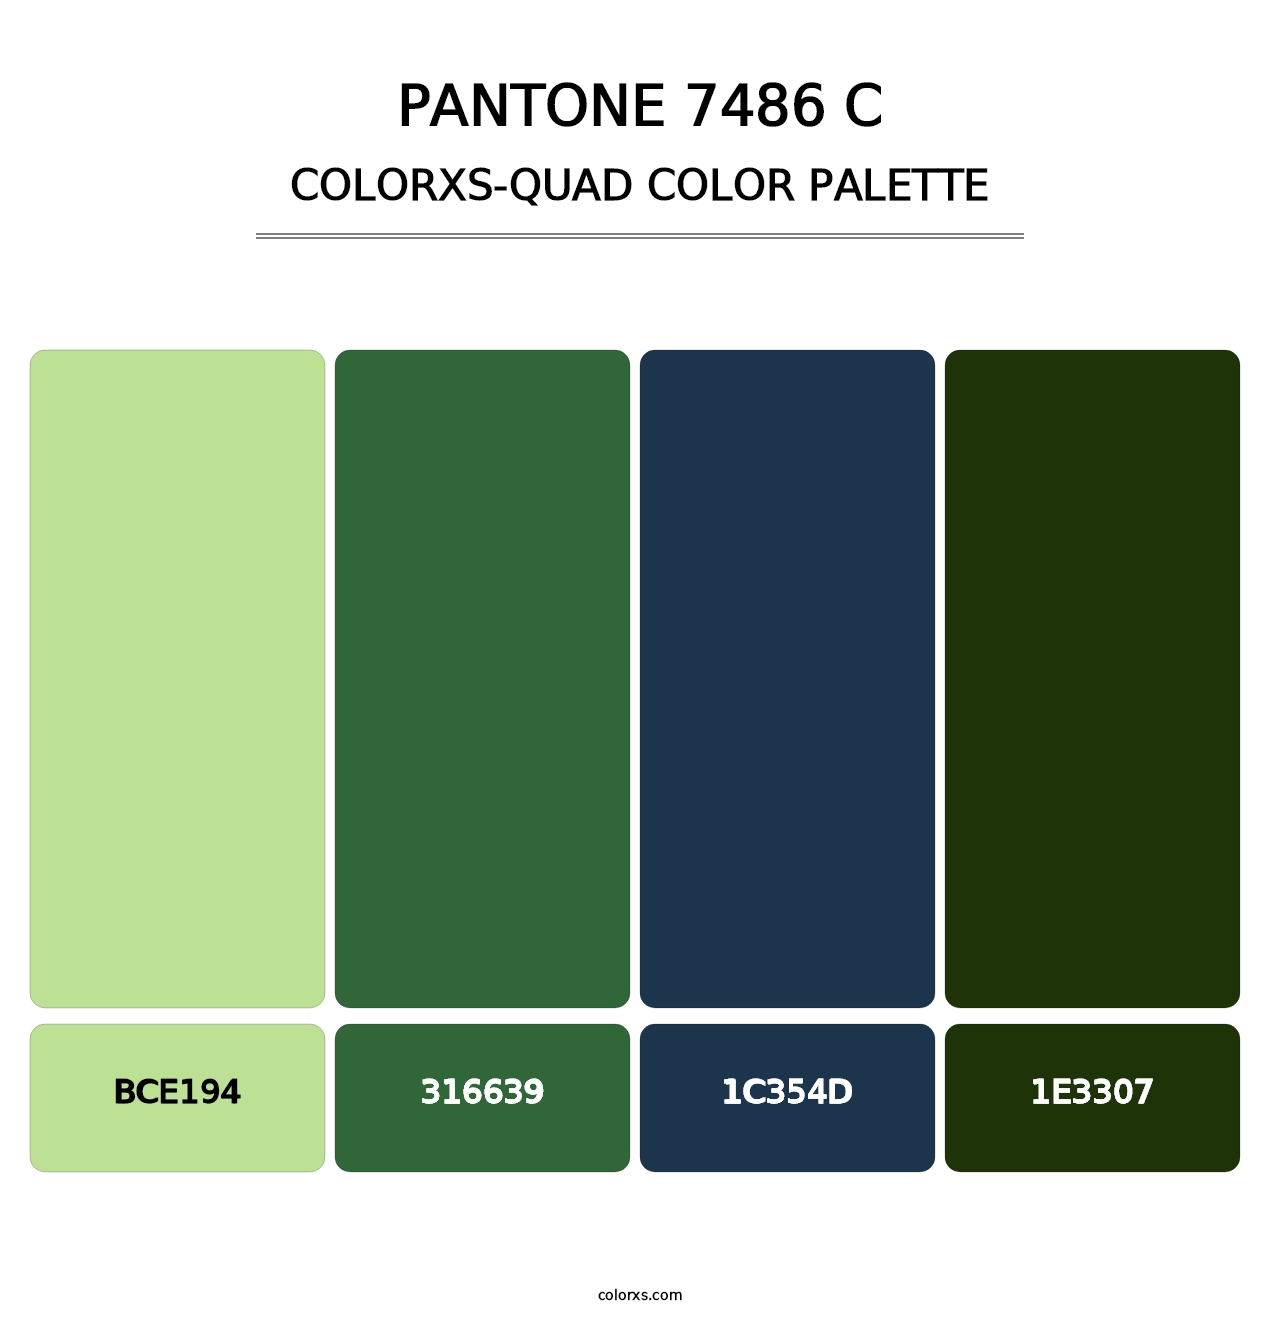 PANTONE 7486 C - Colorxs Quad Palette